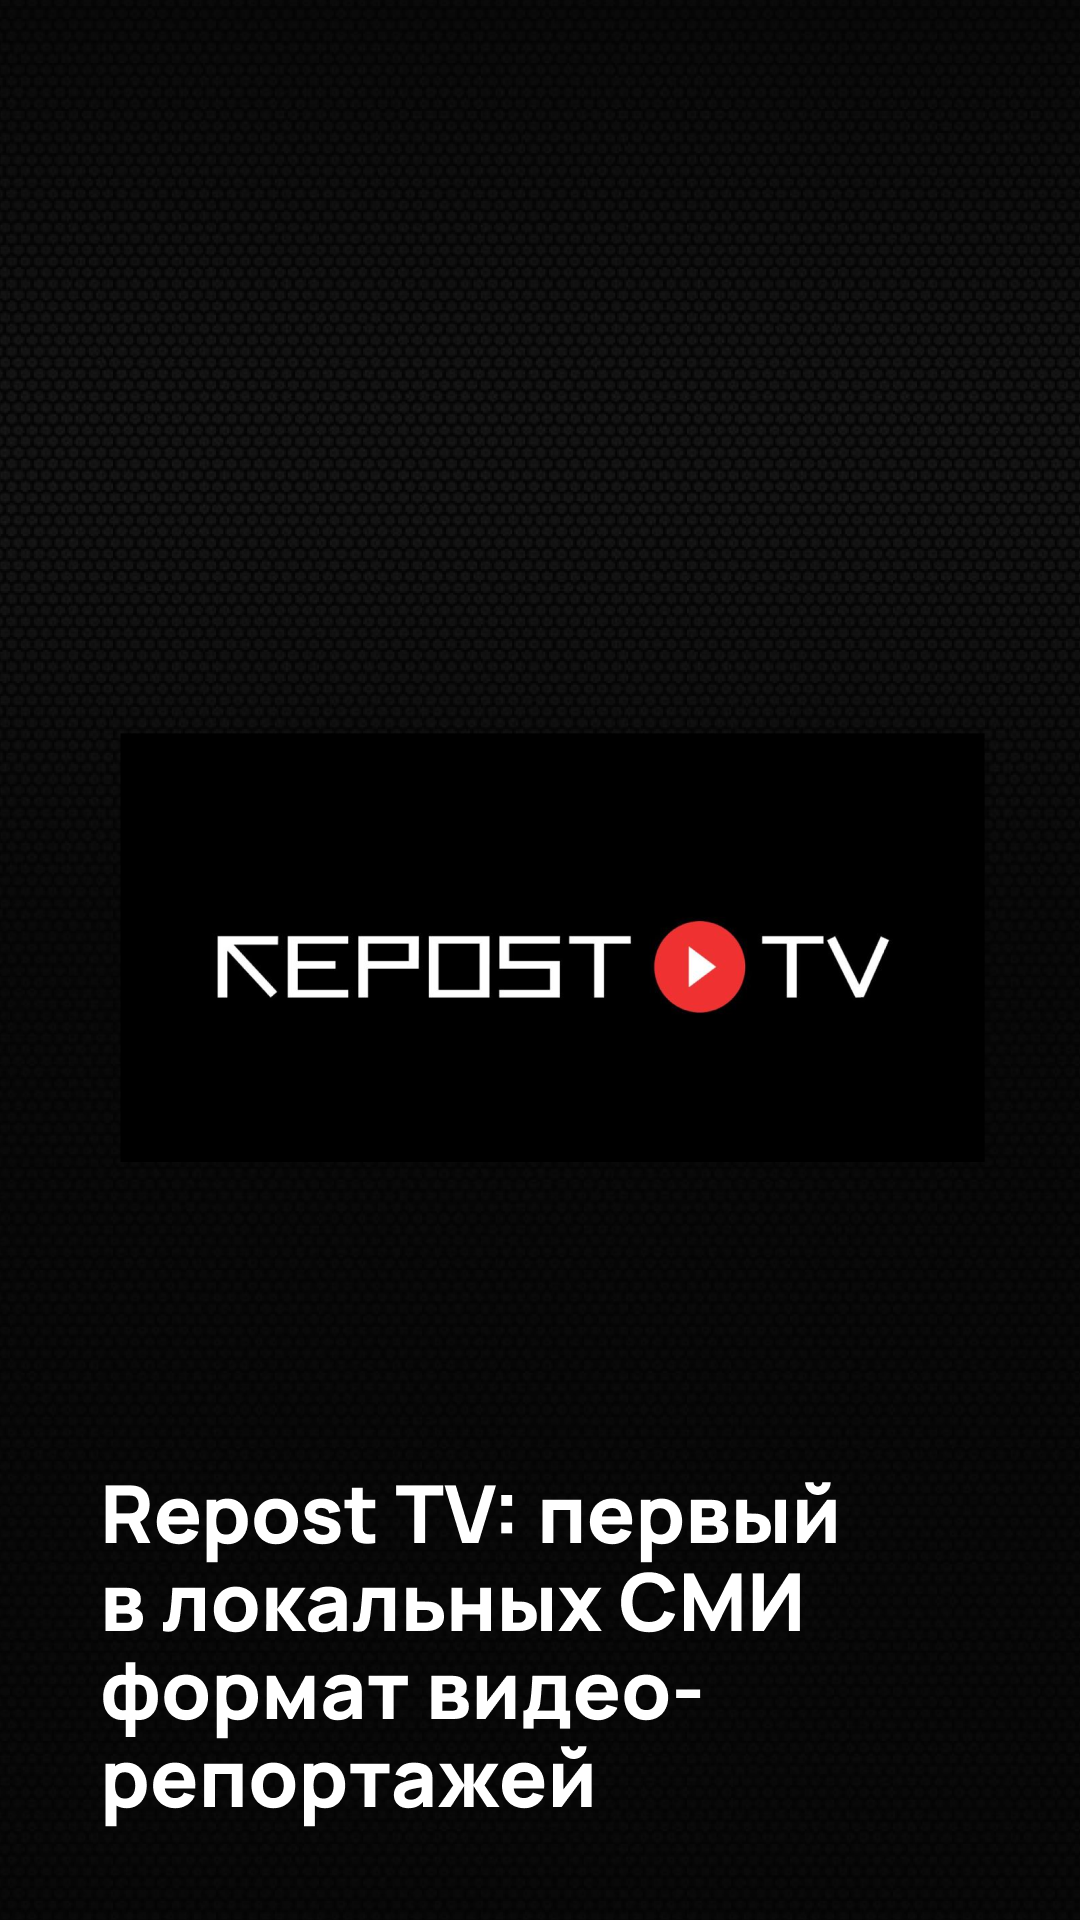 Repost анонсирует Repost TV: первый в локальных СМИ формат видео-репортажей и трансляций, снятых вертикально